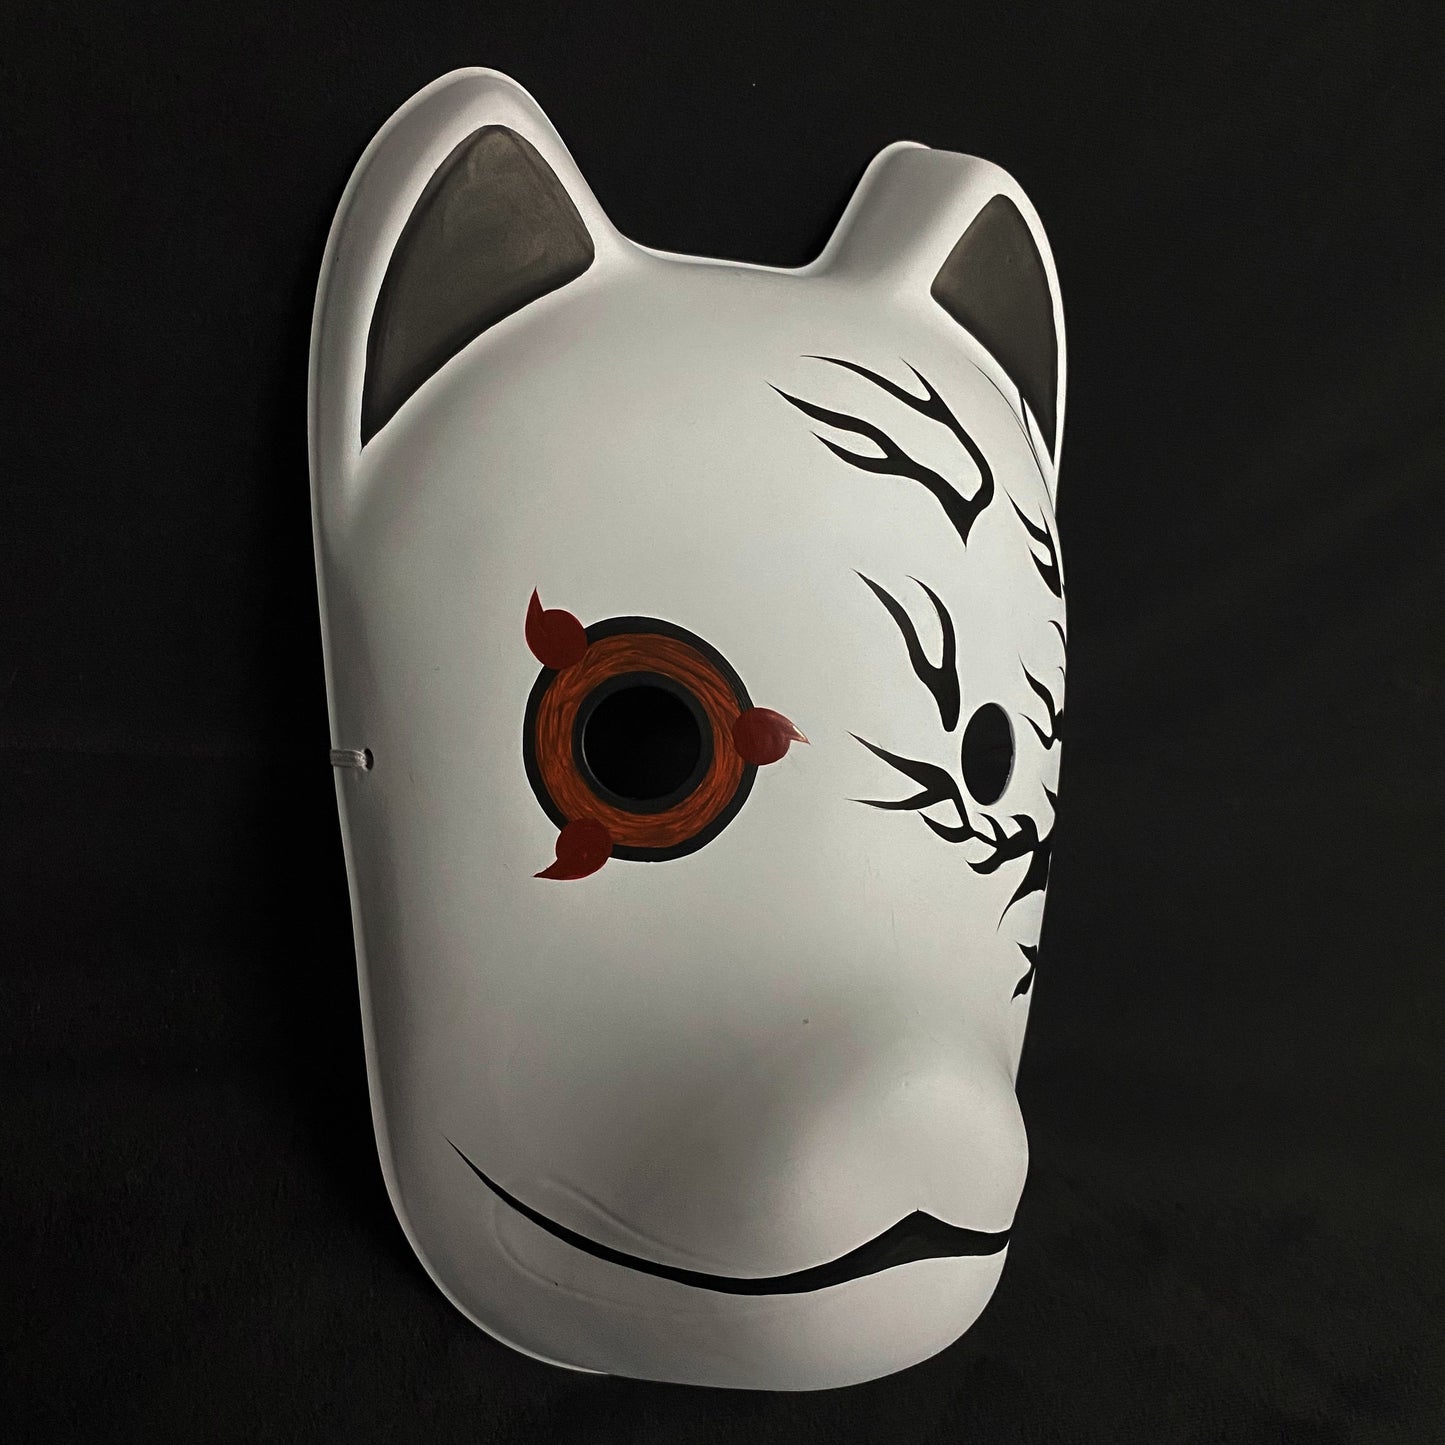 Anbu Black Ops Mask - Cursed Sasuke | XPlayer Shop